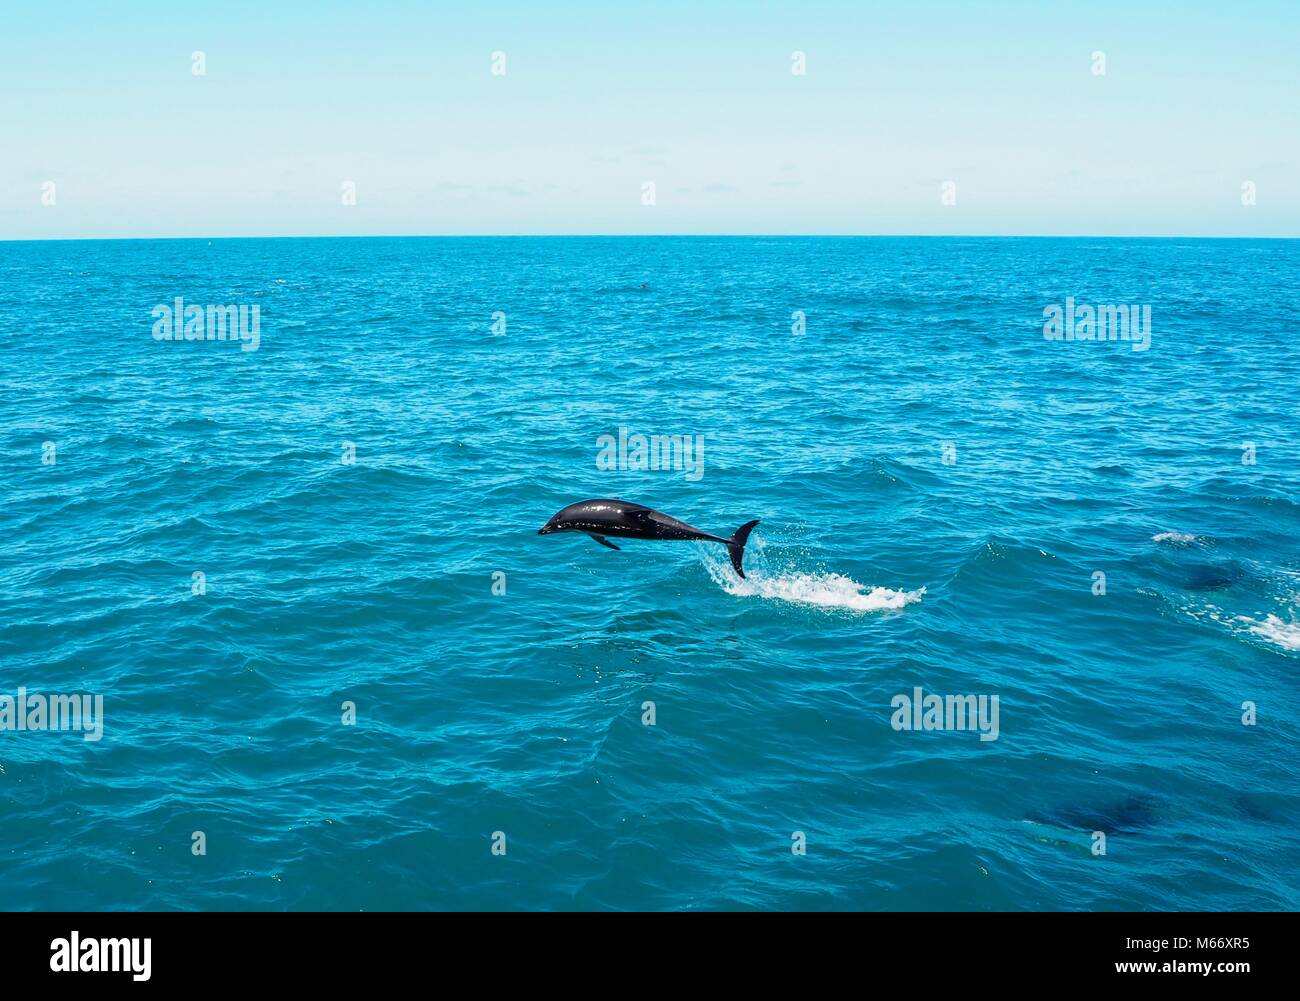 Nuotare in un pod di cinque centinaia di delfini presso la costa di Kaikoura in Nuova Zelanda. Bella creatura che ha avuto così tanto divertimento saltando intorno alla barca. Foto Stock